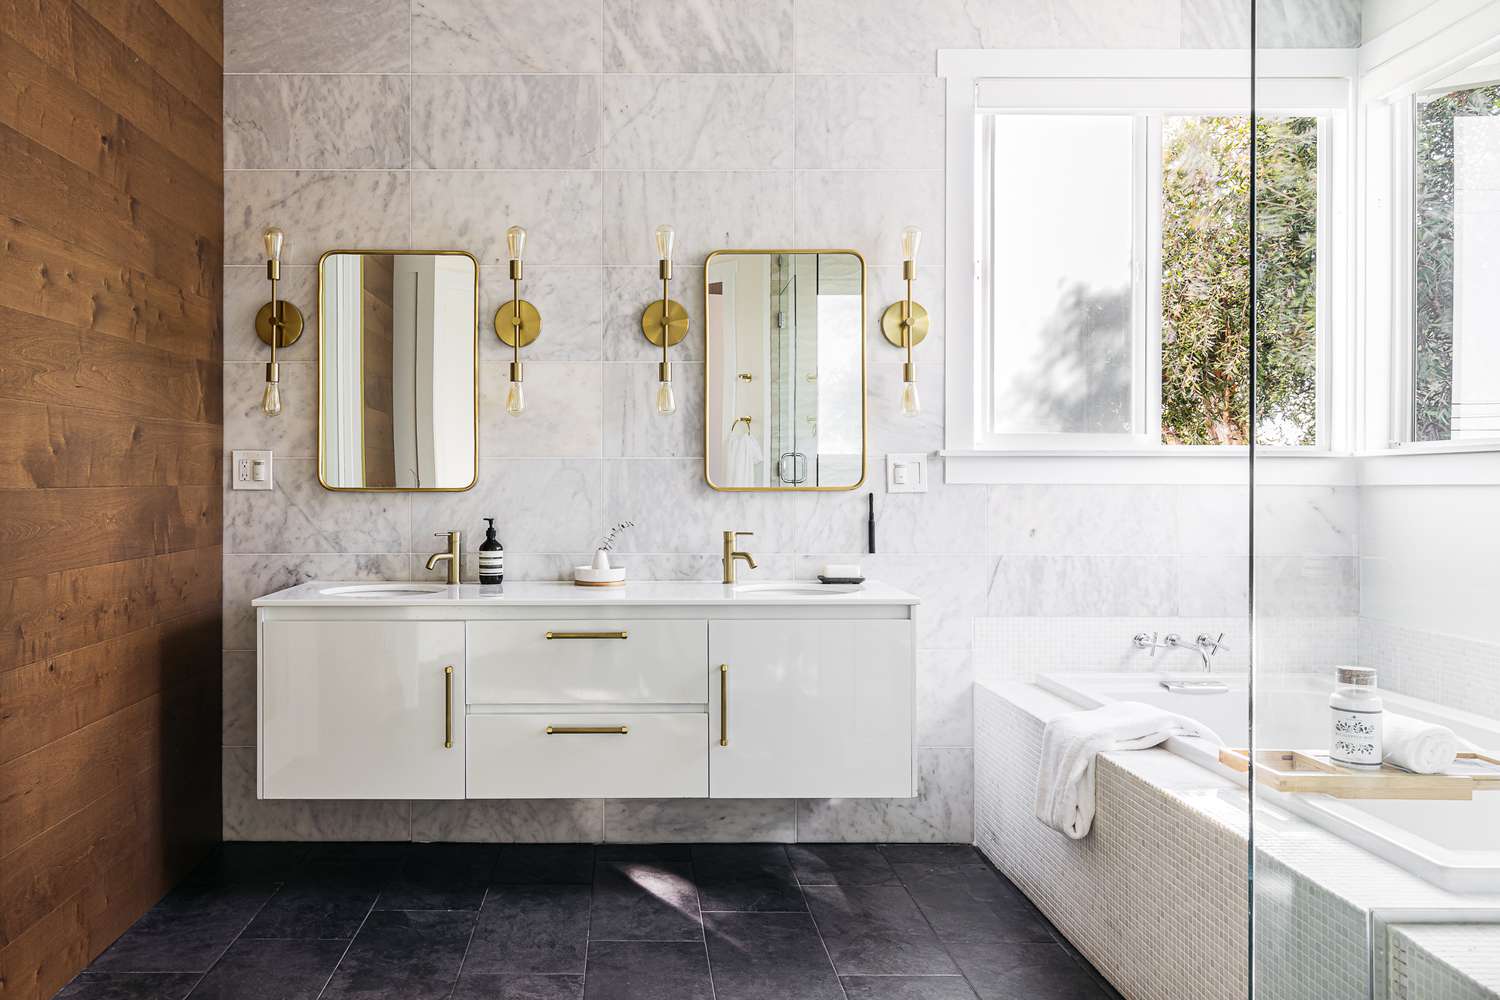 Grande salle de bain avec des luminaires décoratifs autour des miroirs et de grandes fenêtres au-dessus de la baignoire